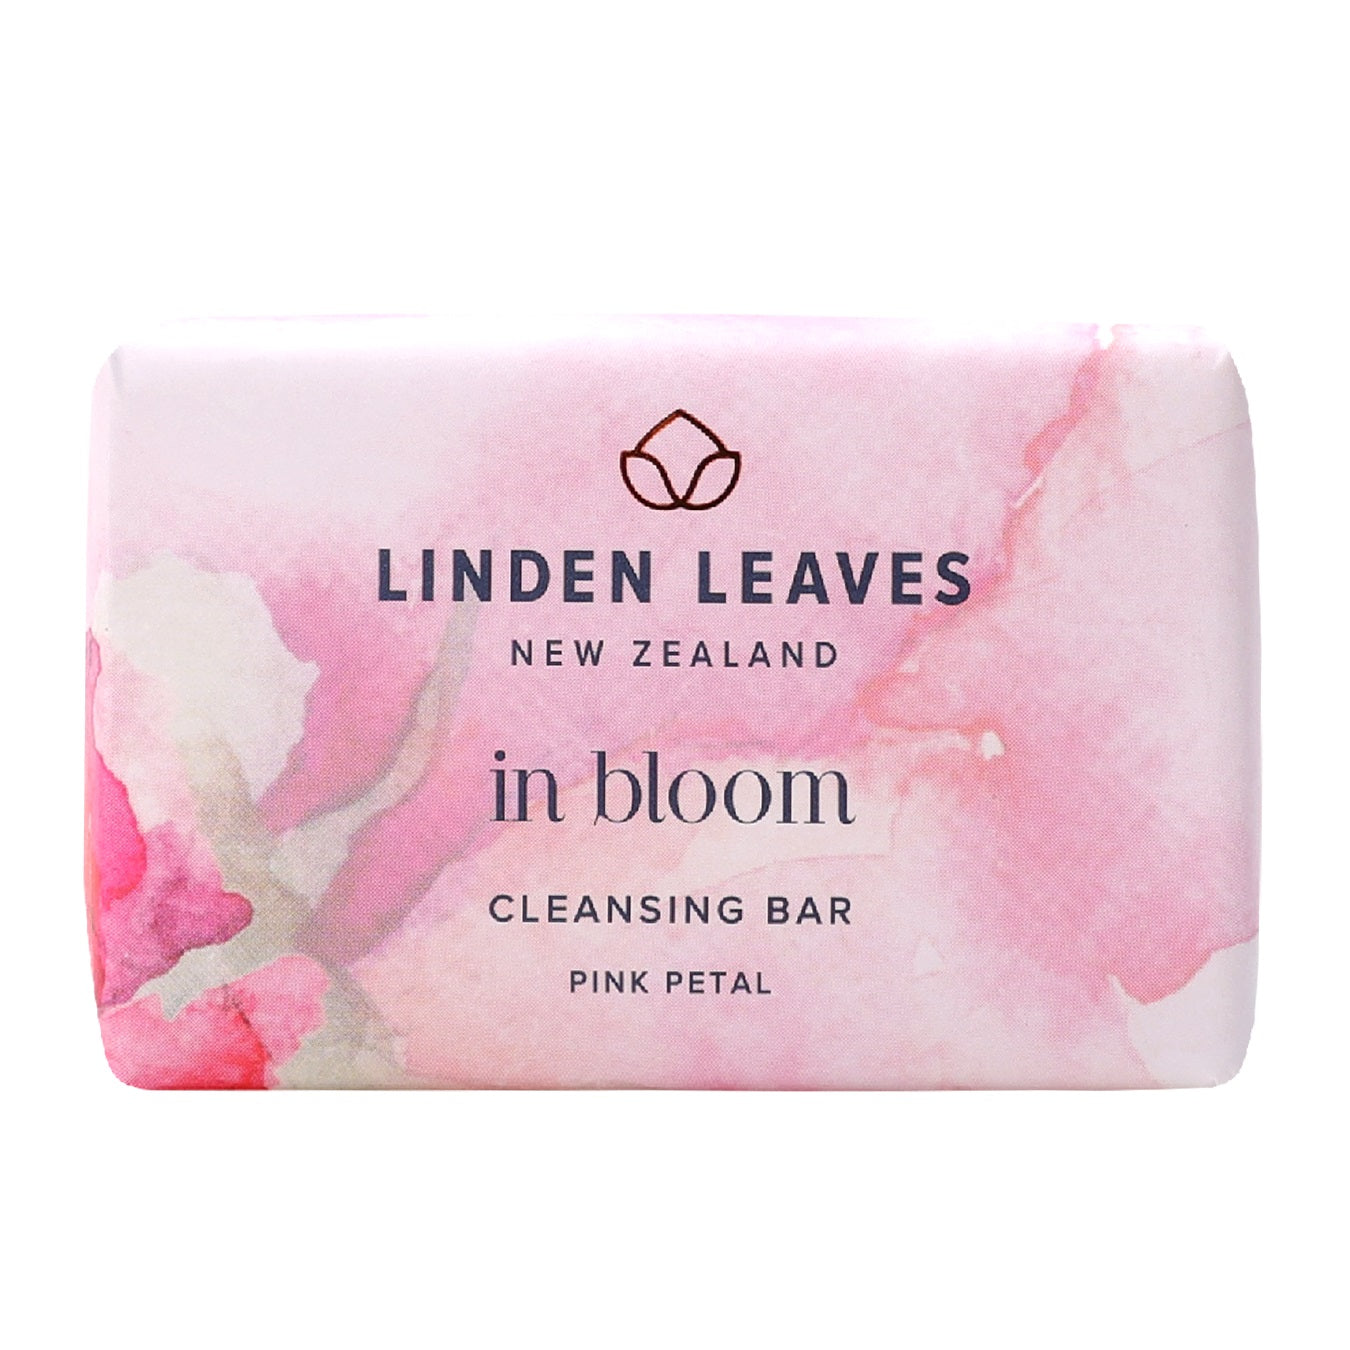 Linden Leaves In Bloom Pink Petal Cleansing Bar 100g.